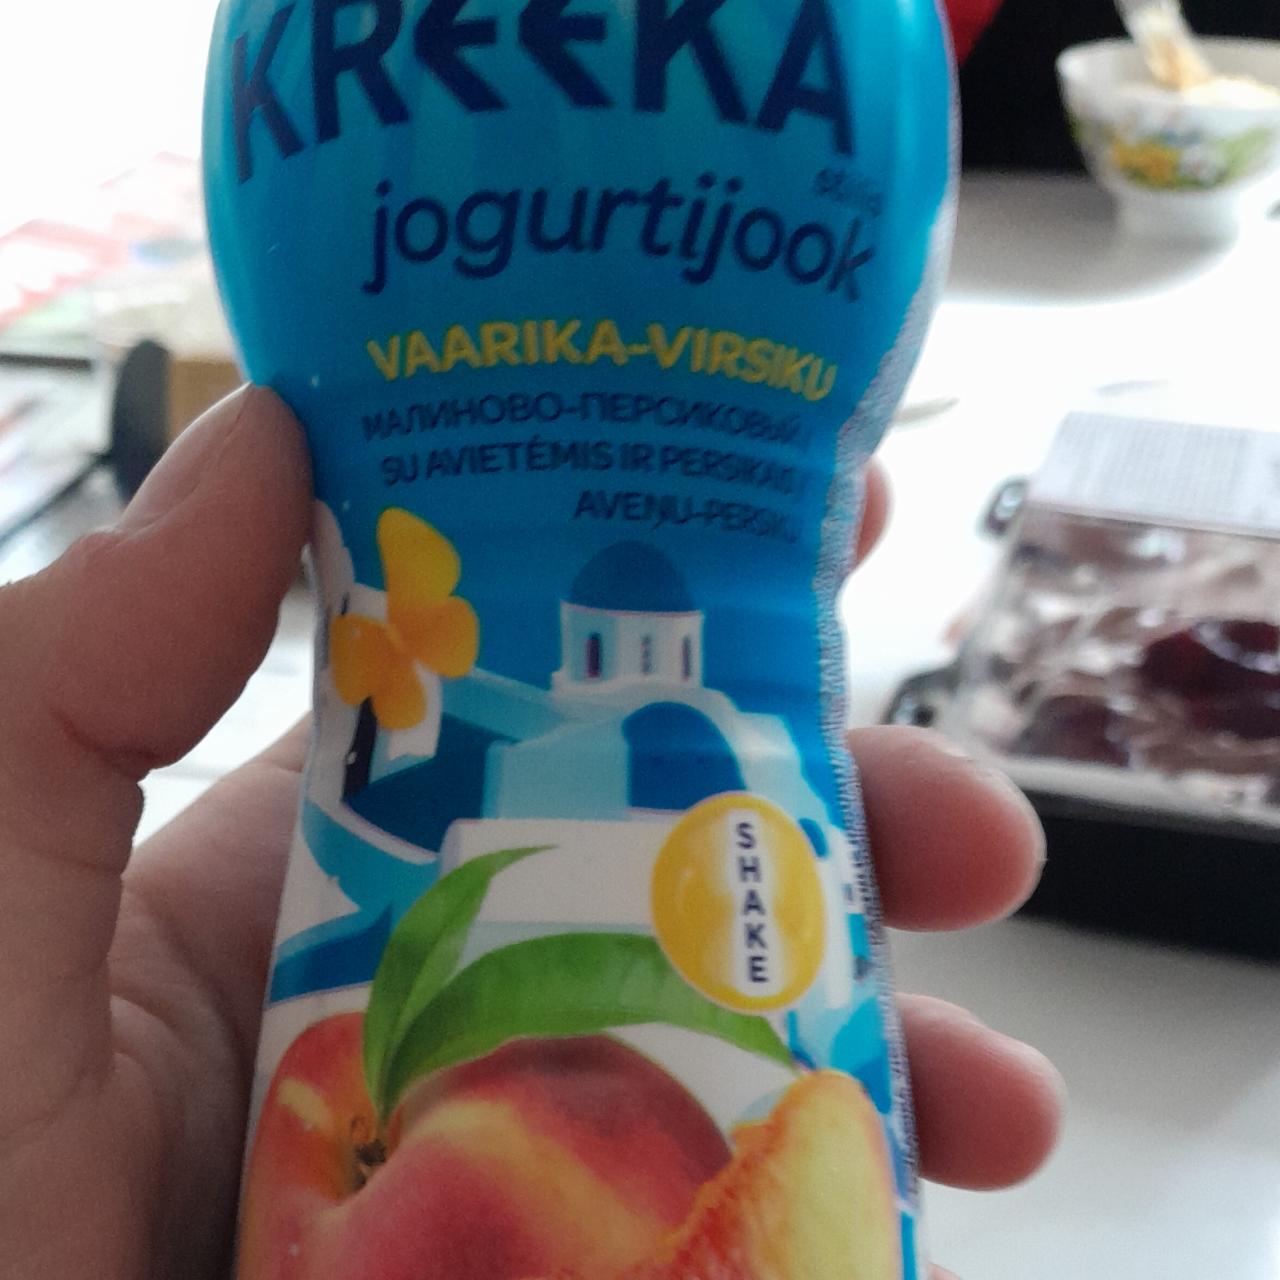 Фото - jogurtijook йогурт питьевой персиково-малиновый Keeka